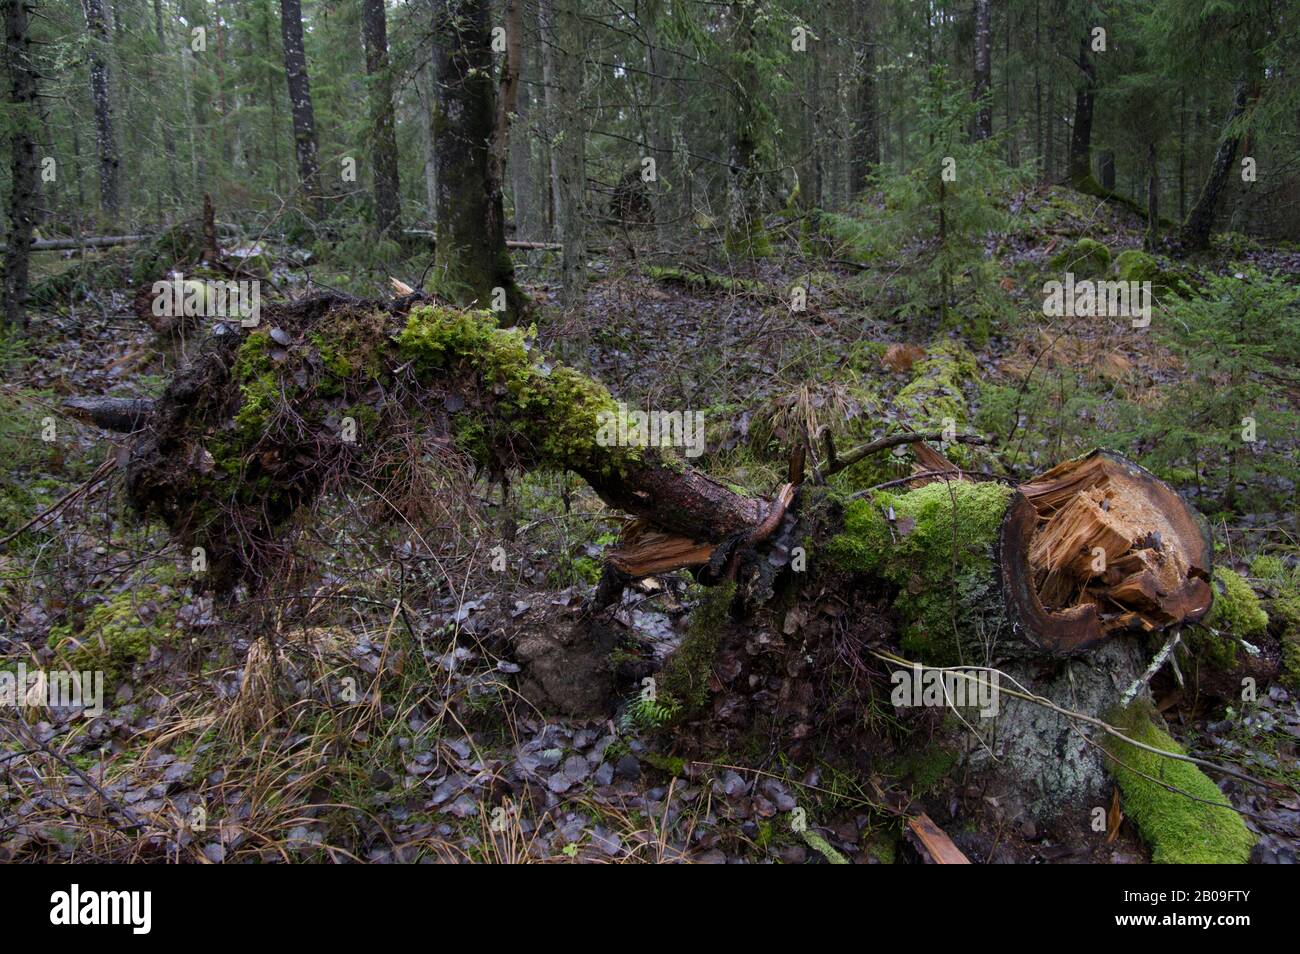 Waldwaldszene in Schweden nach einigen schweren Stürmen mit zerbrochenen und gestürzten Bäumen, ausgegrabenen Wurzeln und nassem moosem Boden Stockfoto